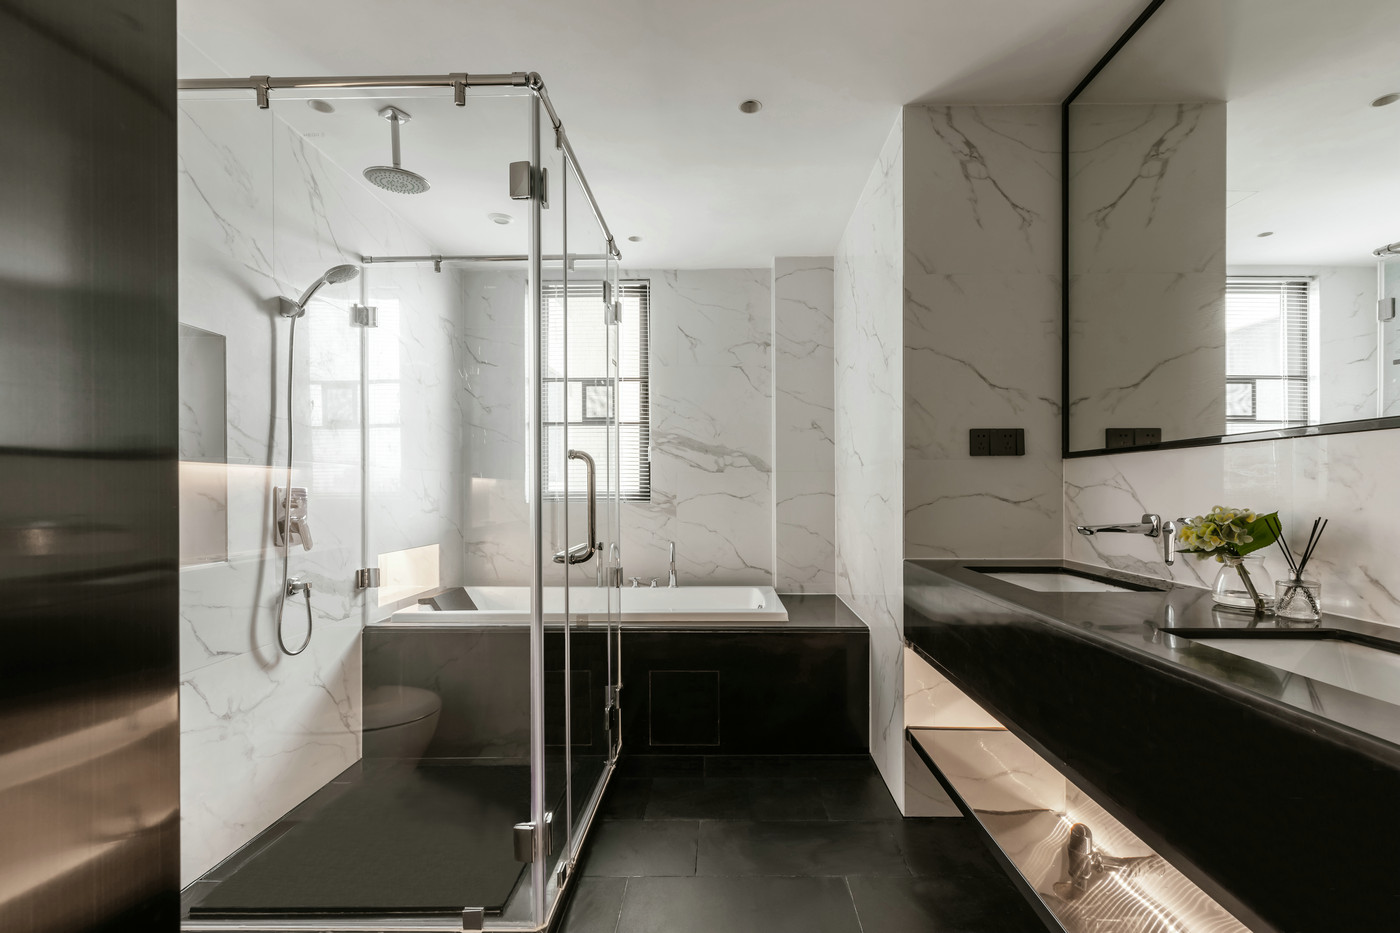 黑色与白色大理石结合的方式，提升了卫生间的高级氛围，干湿分离设计巧妙。